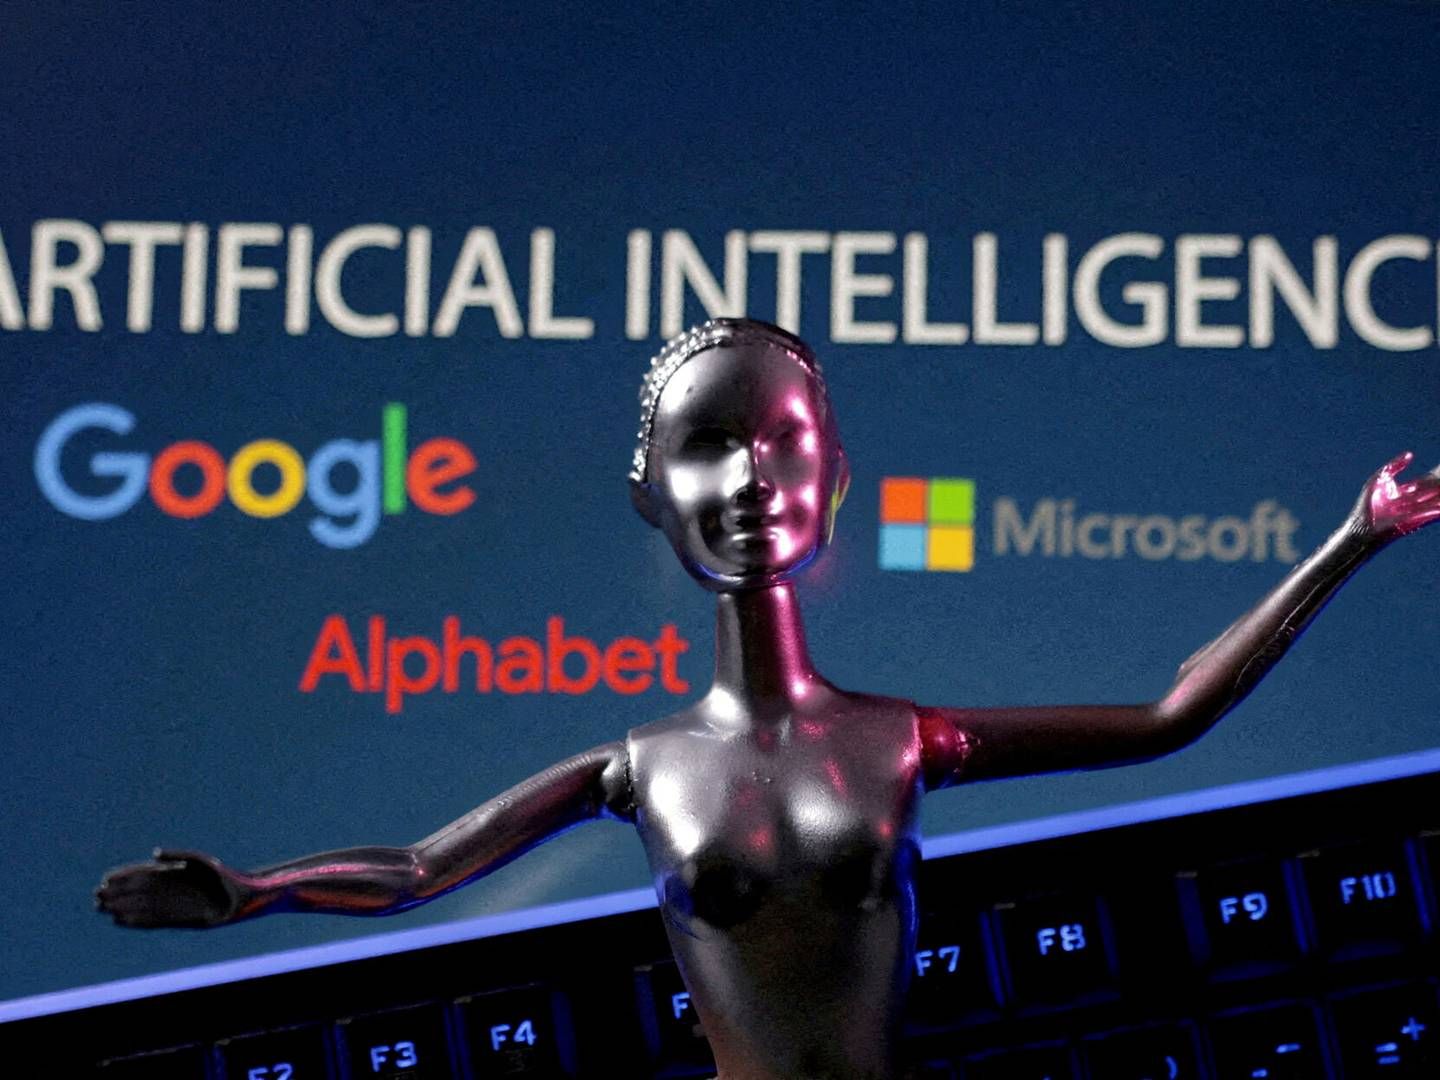 Forud for næste års valg i USA kræver Google nu, at AI-indhold i valgannoncer deklareres. | Foto: Dado Ruvic/Reuters/Ritzau Scanpix